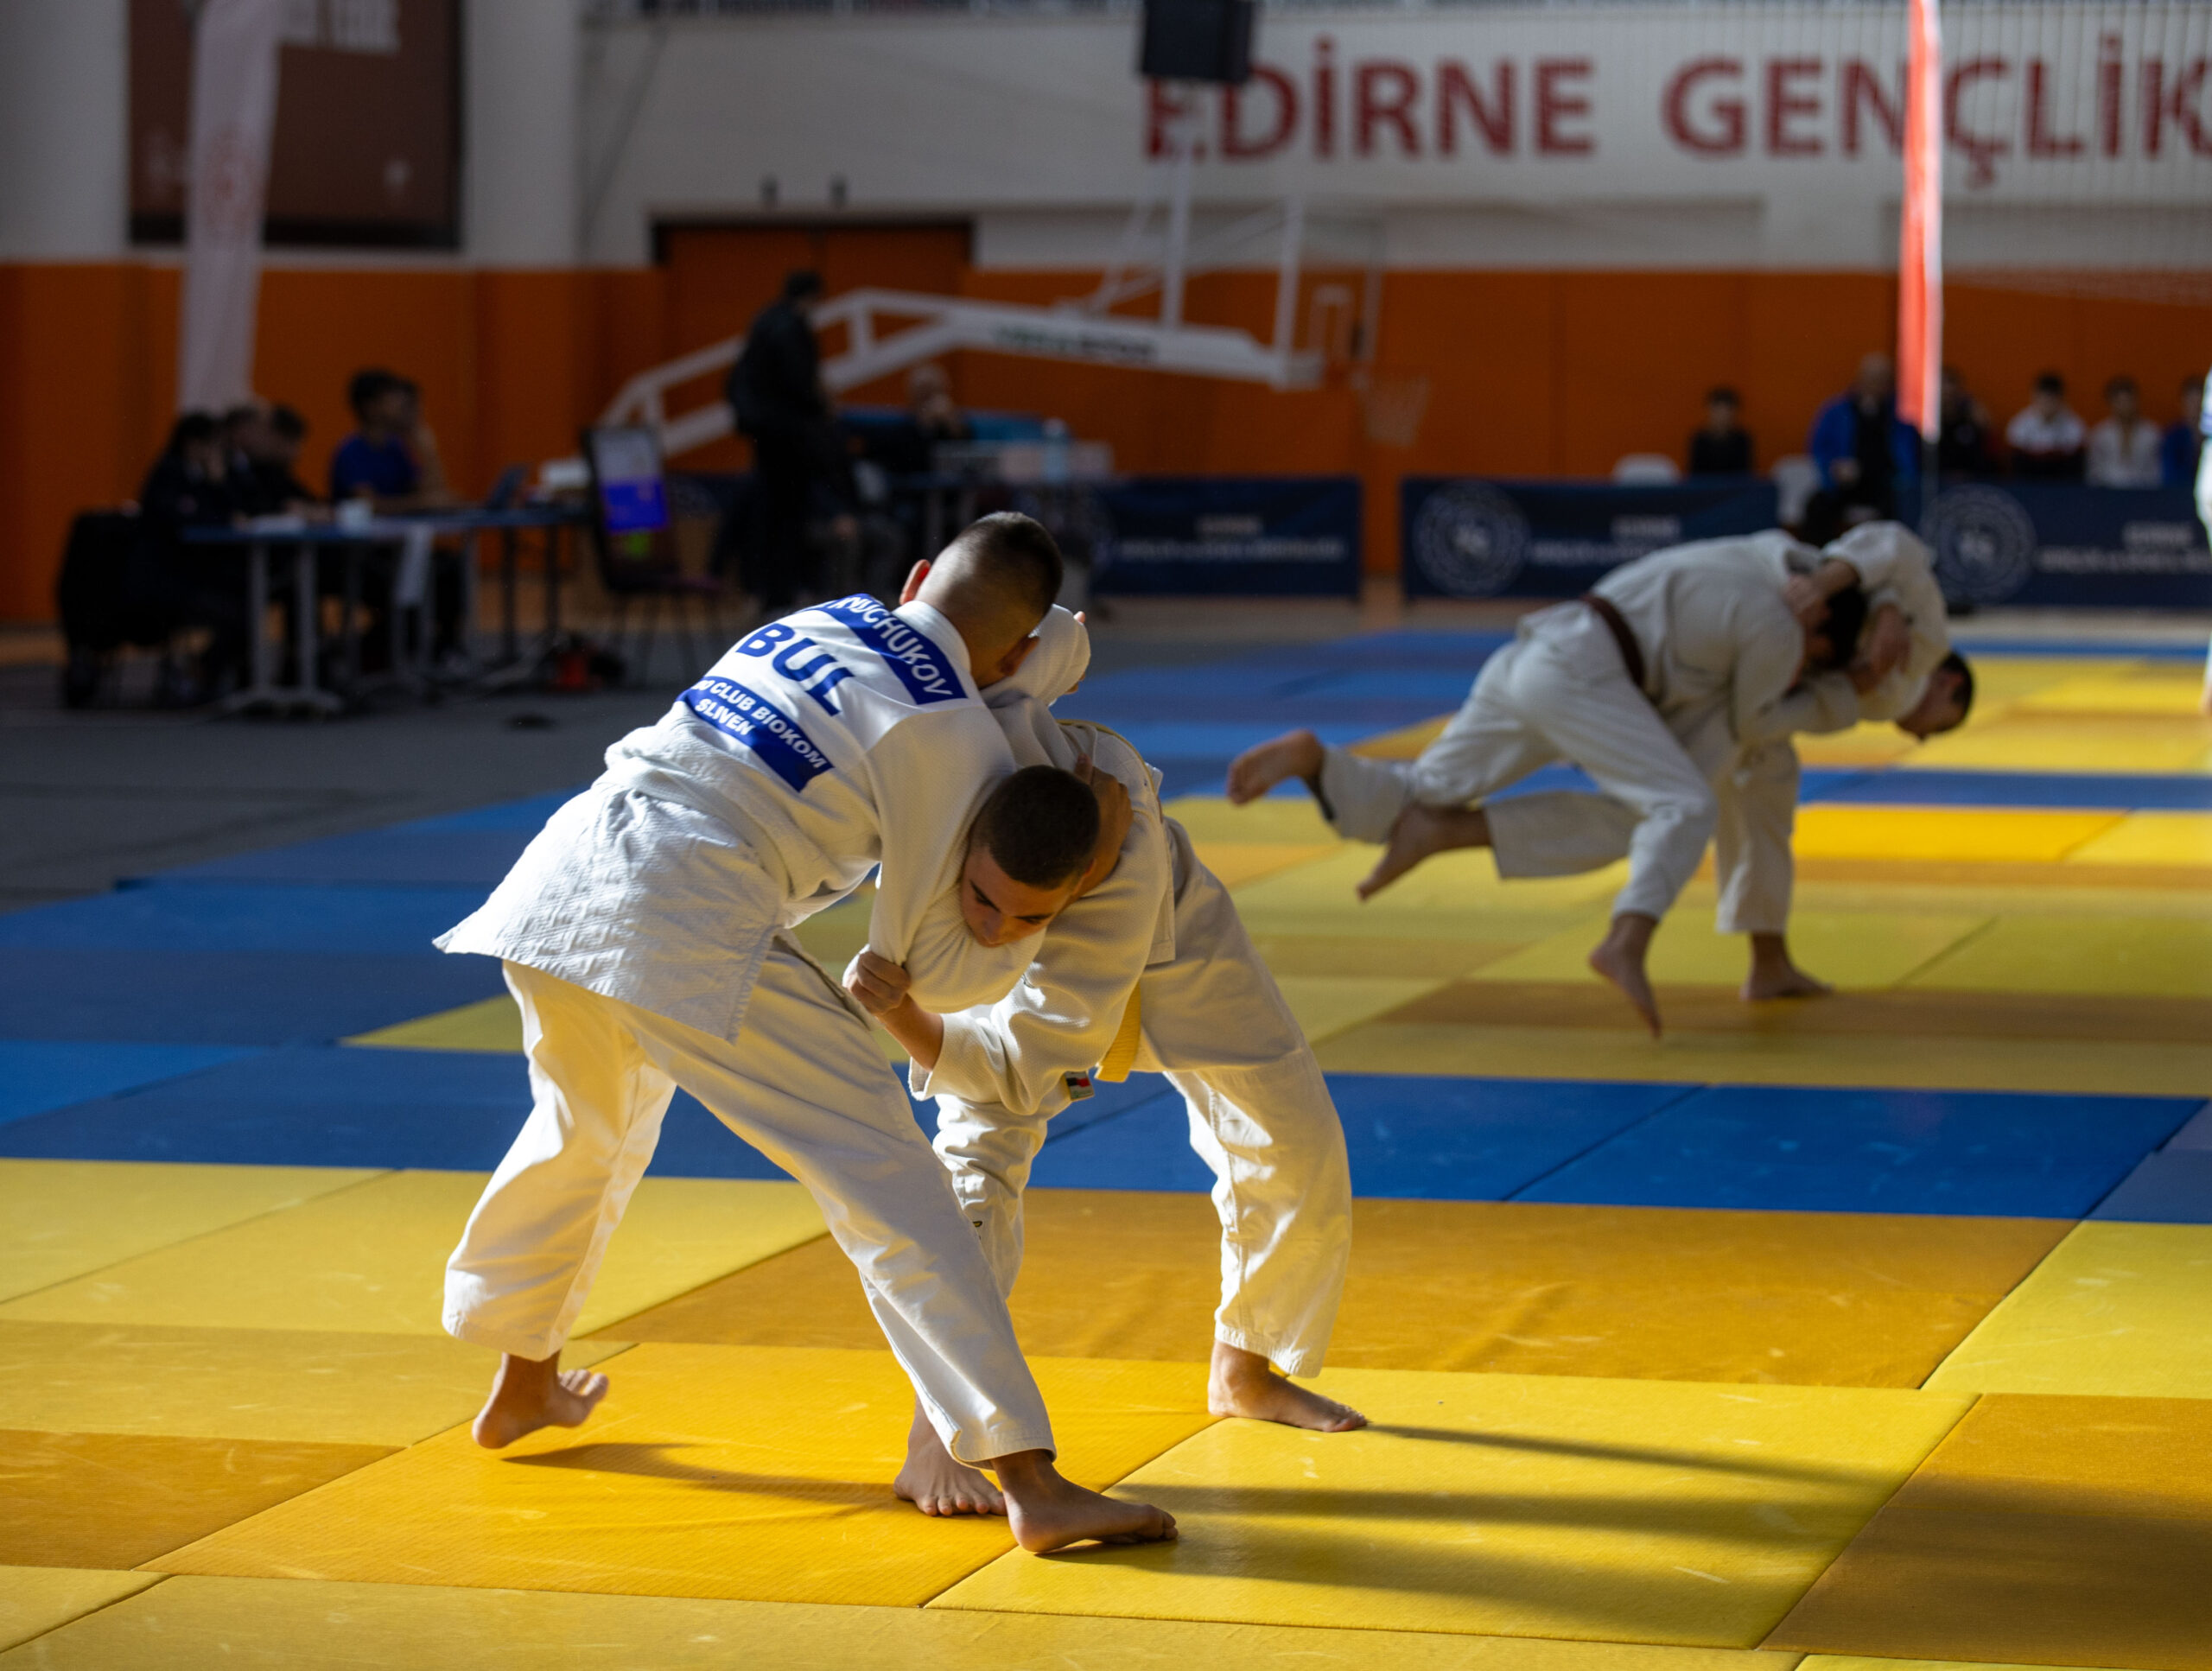 Edirne’de 3. Uluslararası Judo Şampiyonası sona erdi